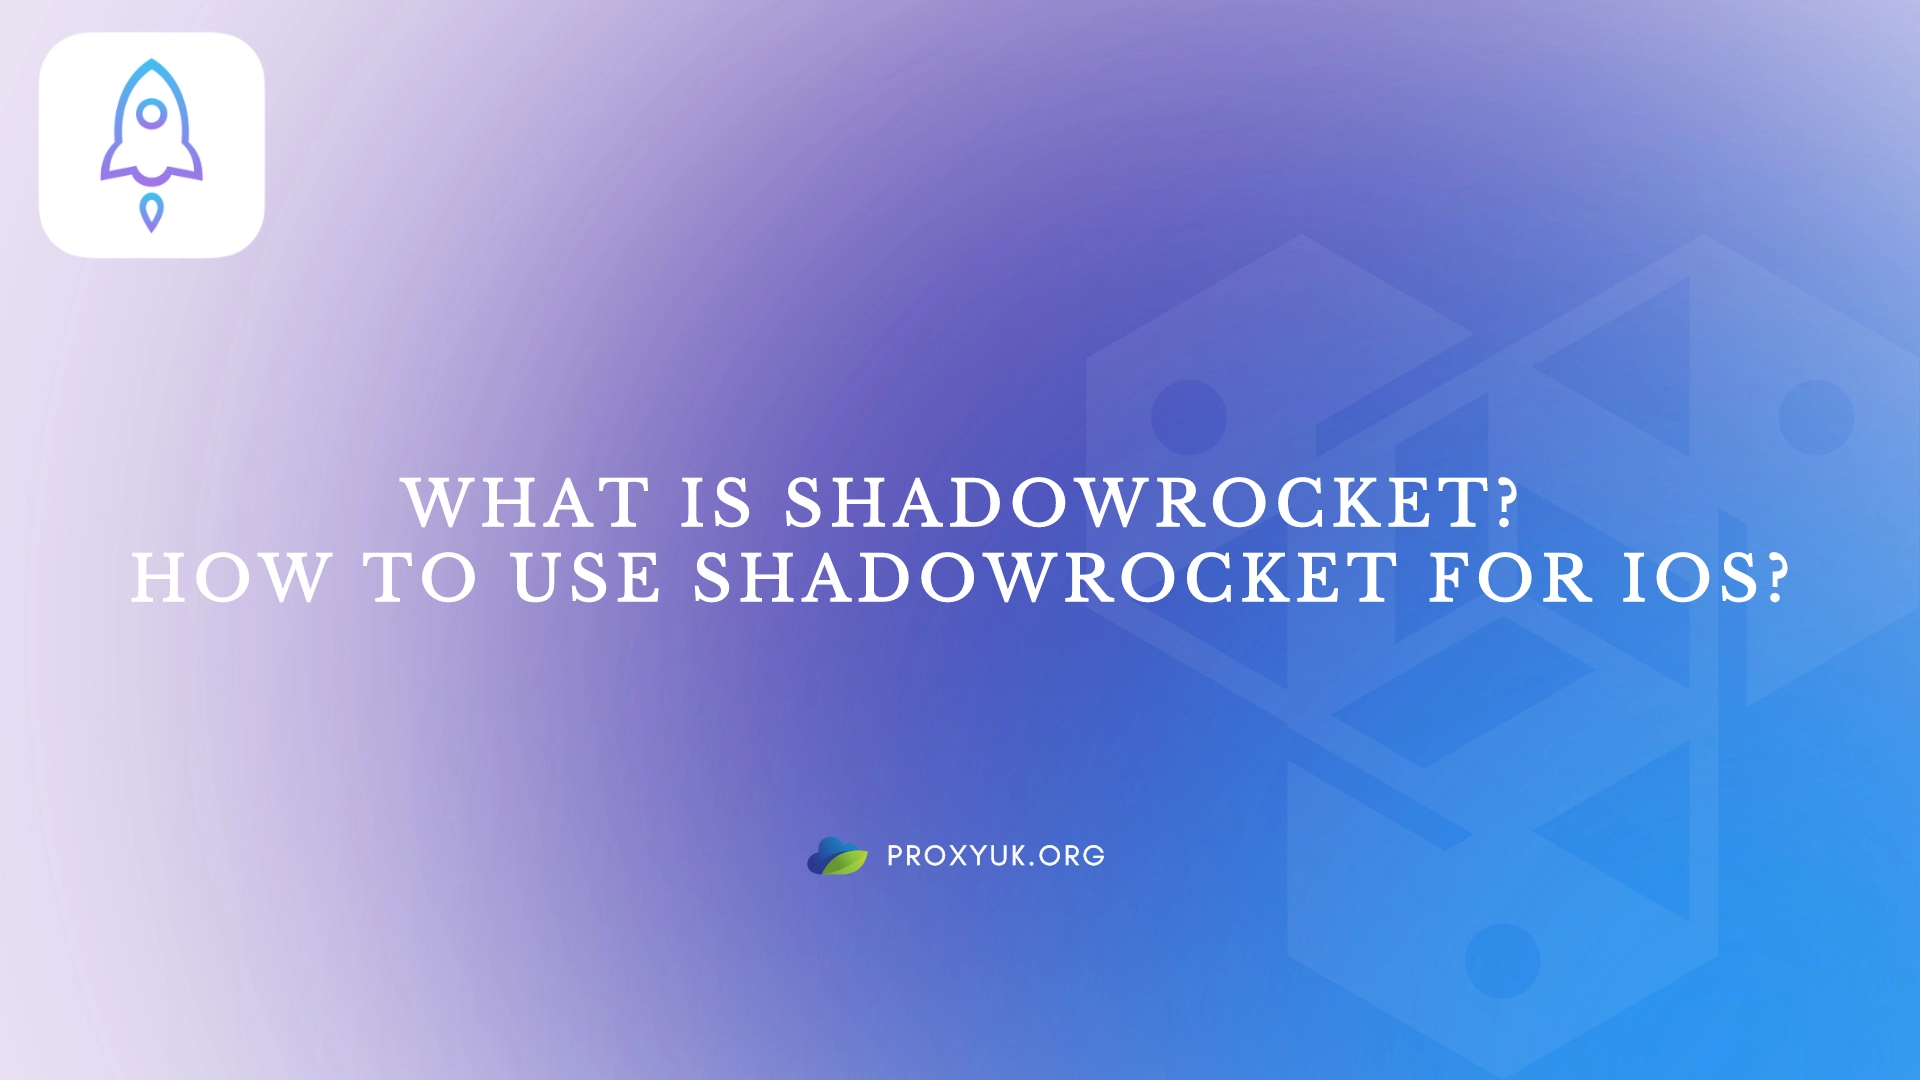 What is Shadowrocket?